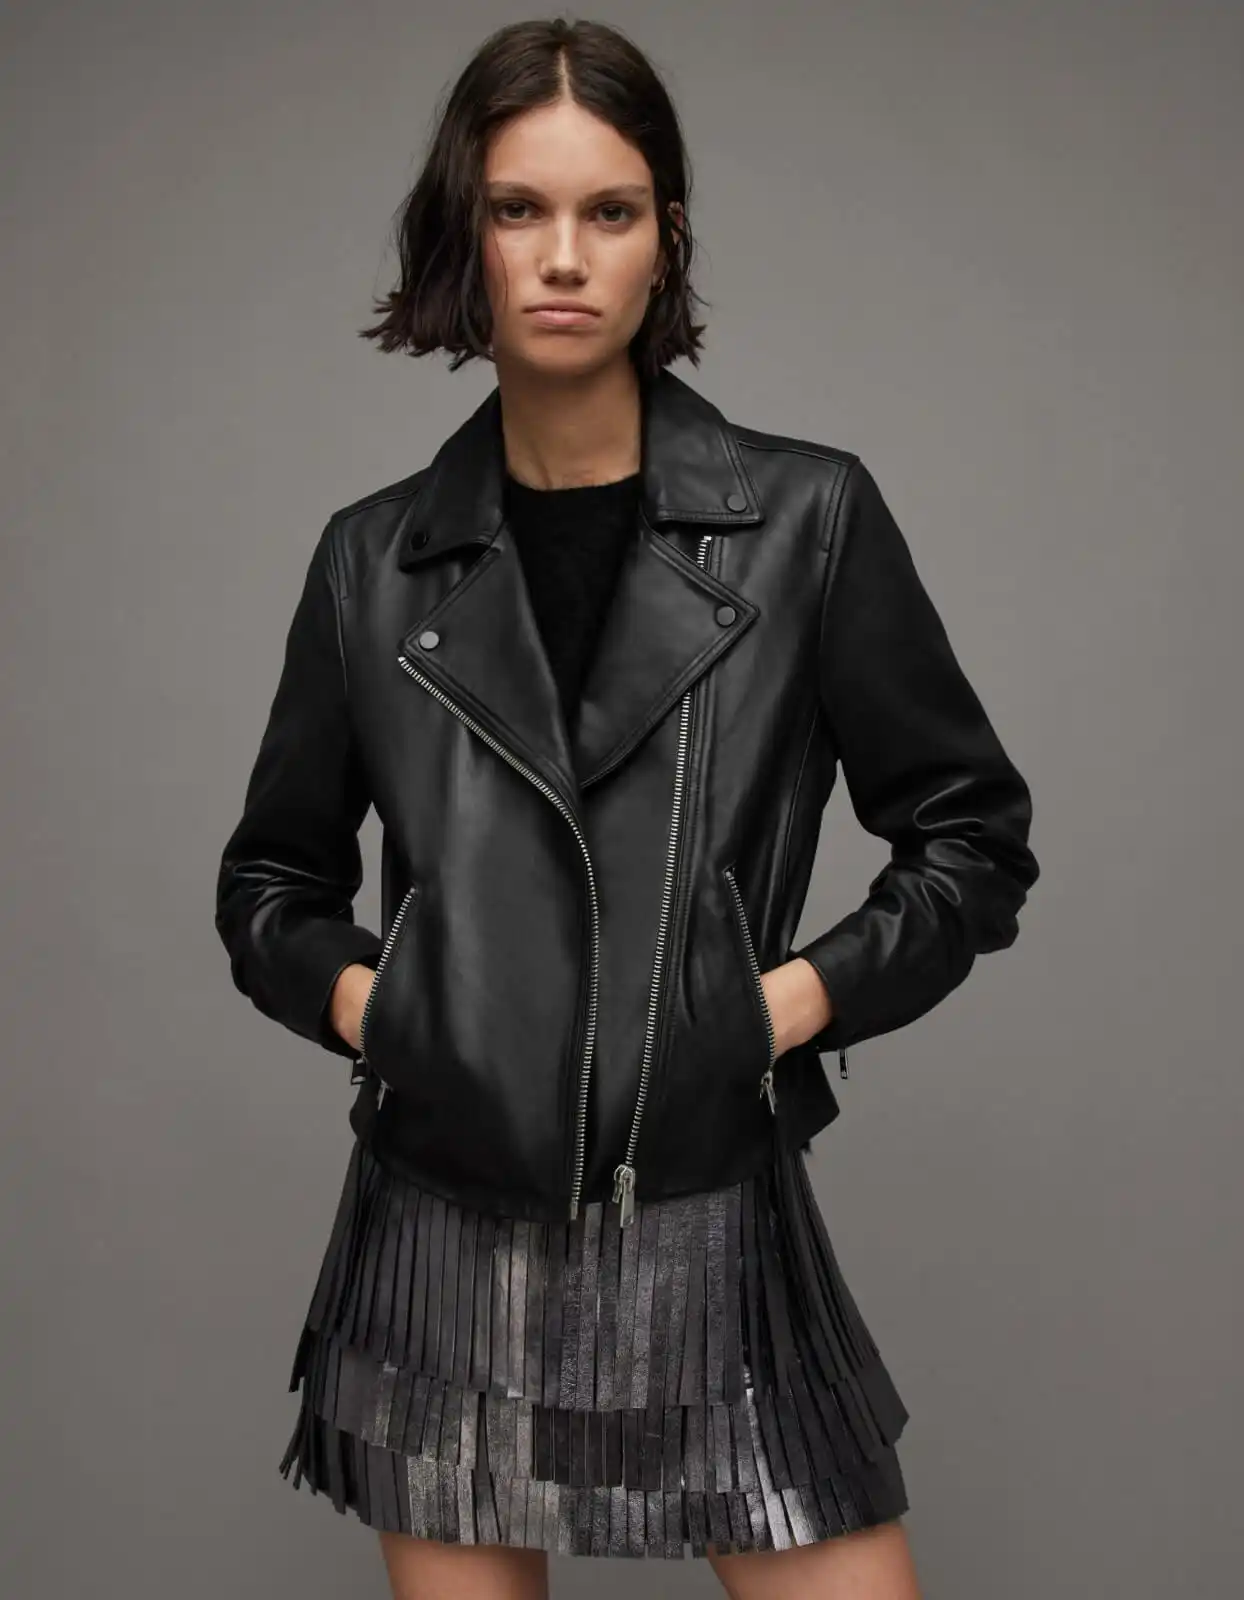 a women wearing leather jacket.